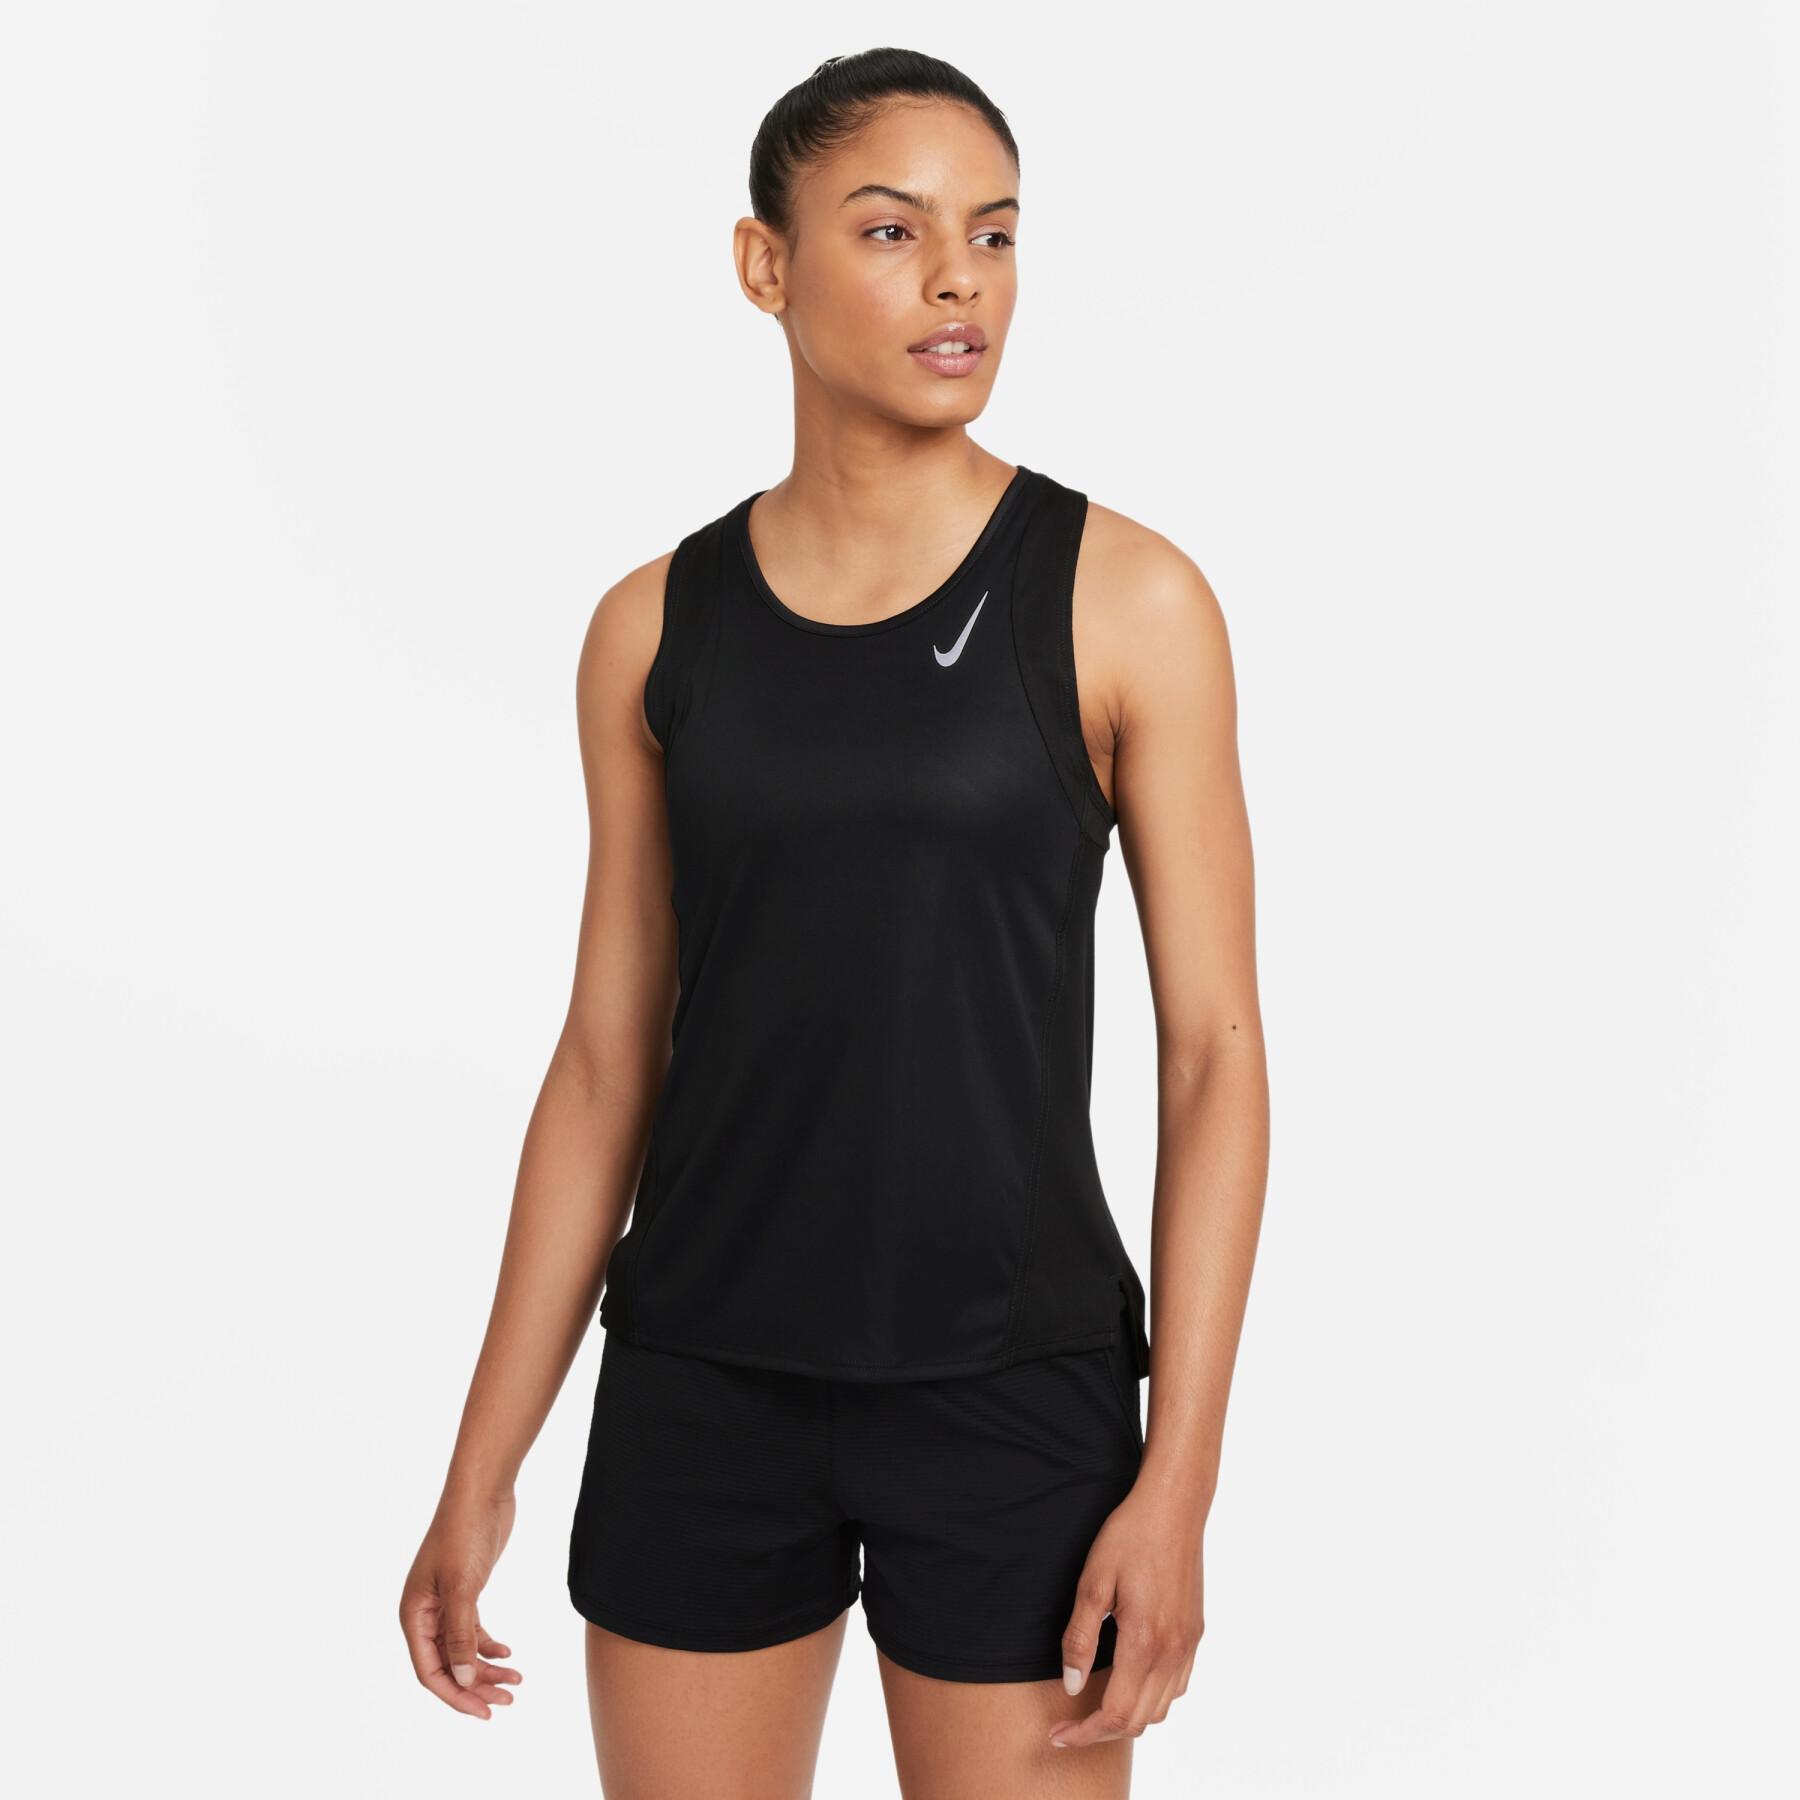 Women's tank top Nike dynamic fit race singlet